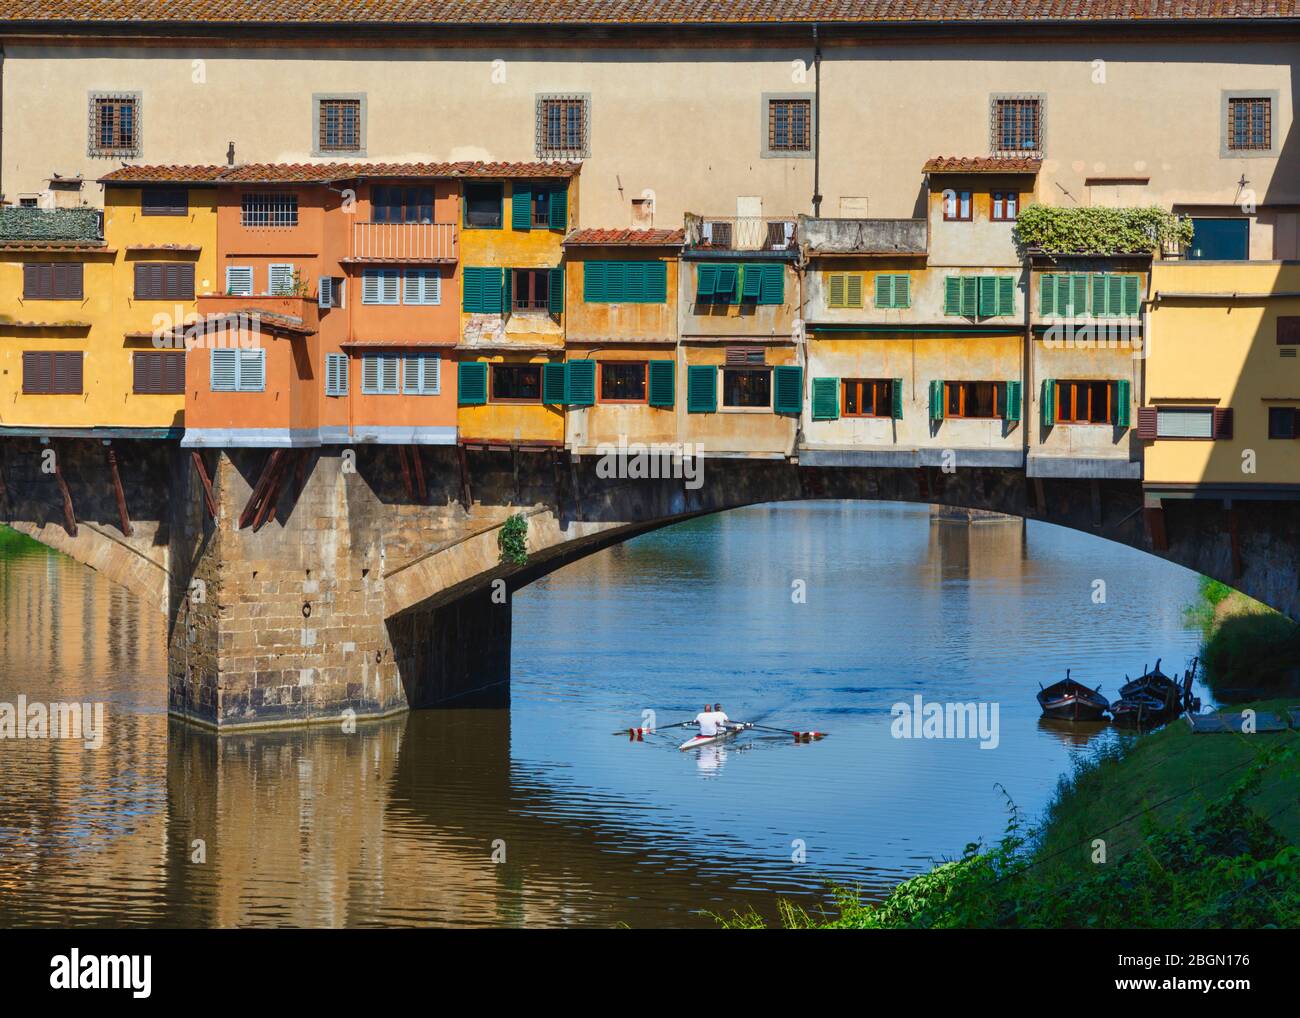 Rudern Sie unter der Ponte Vecchio, oder alte Brücke, Florenz, Toskana, Italien. Das historische Zentrum von Florenz ist ein UNESCO-Weltkulturerbe. Stockfoto